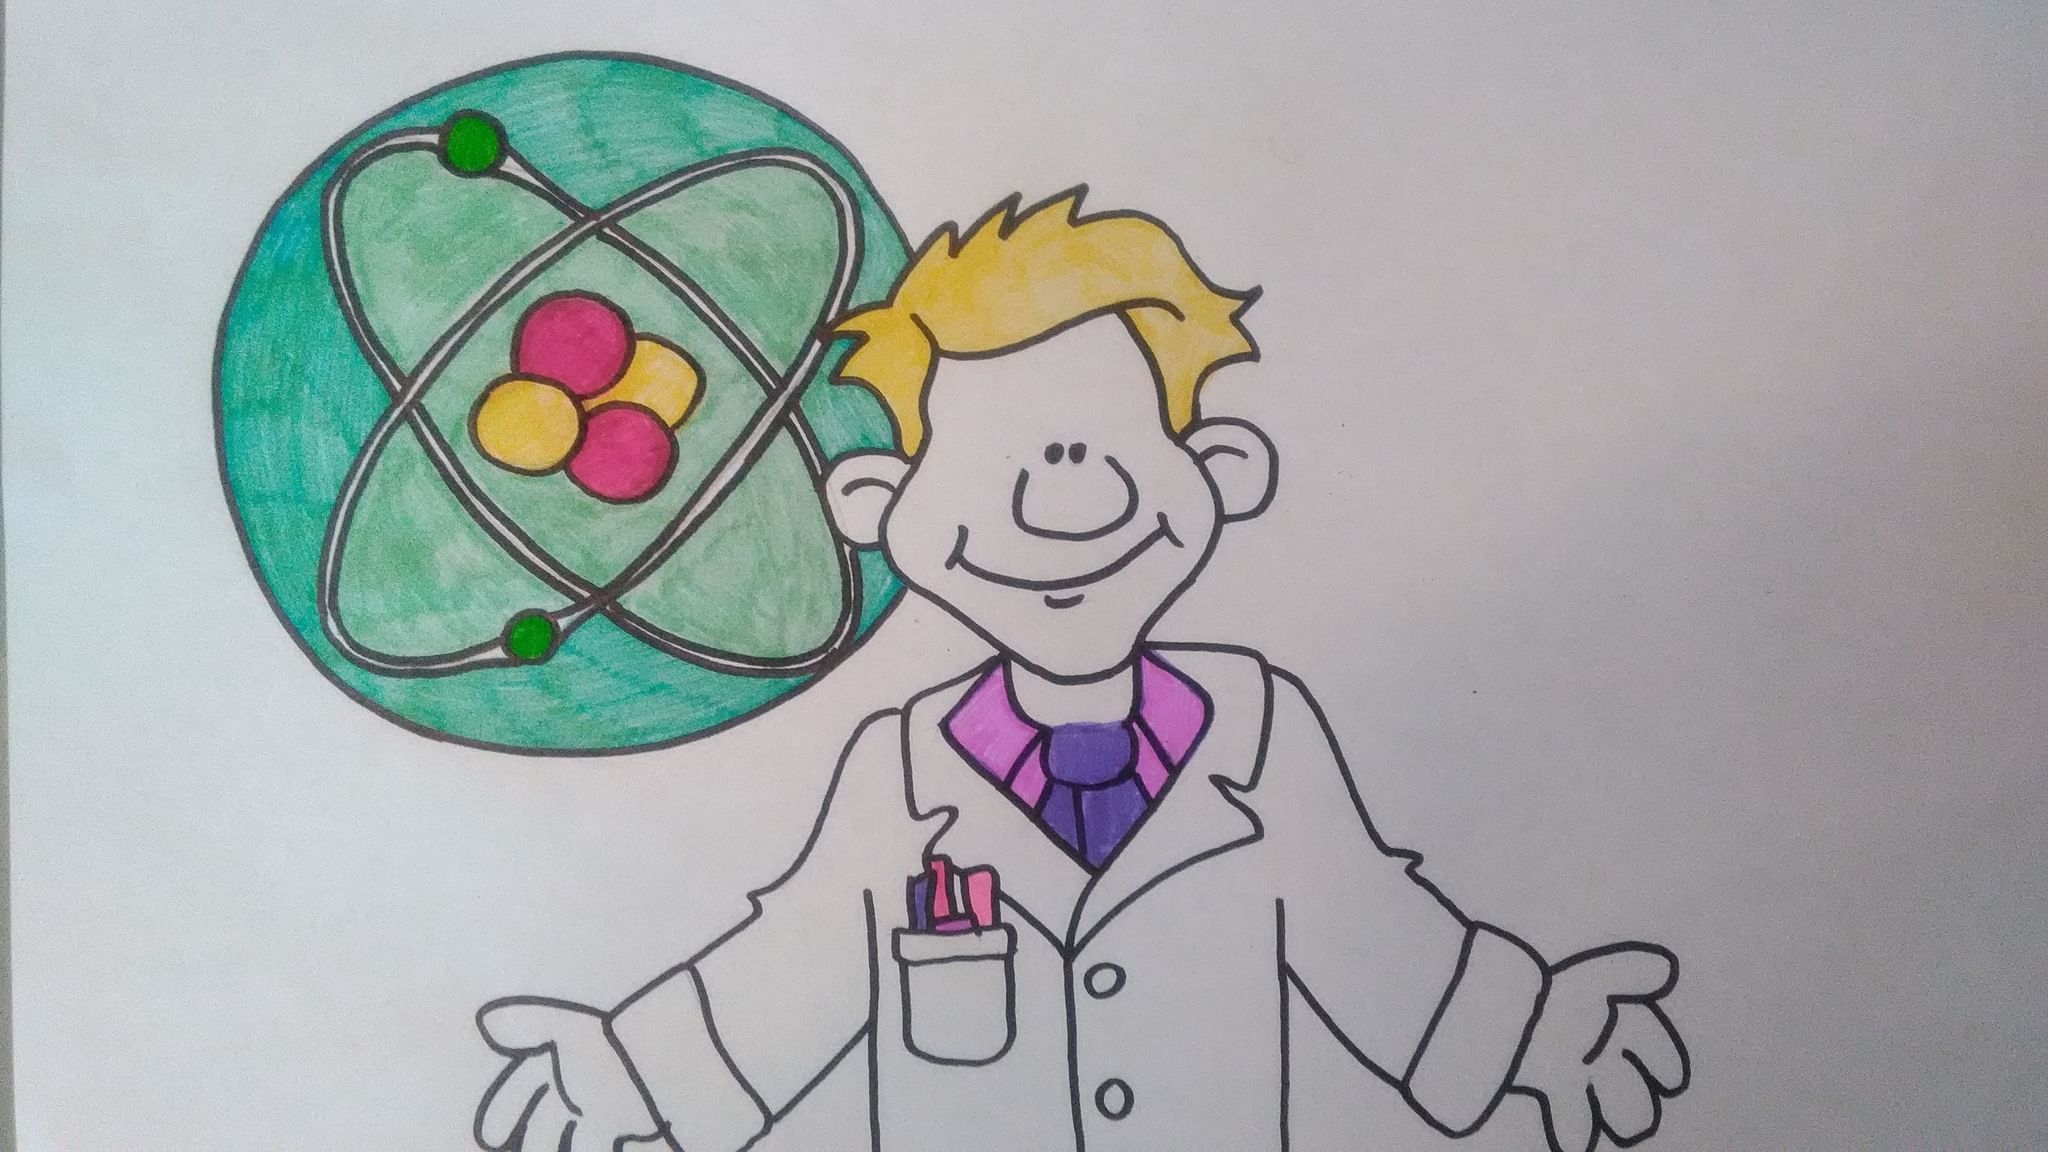 картинки на тему наука для детей